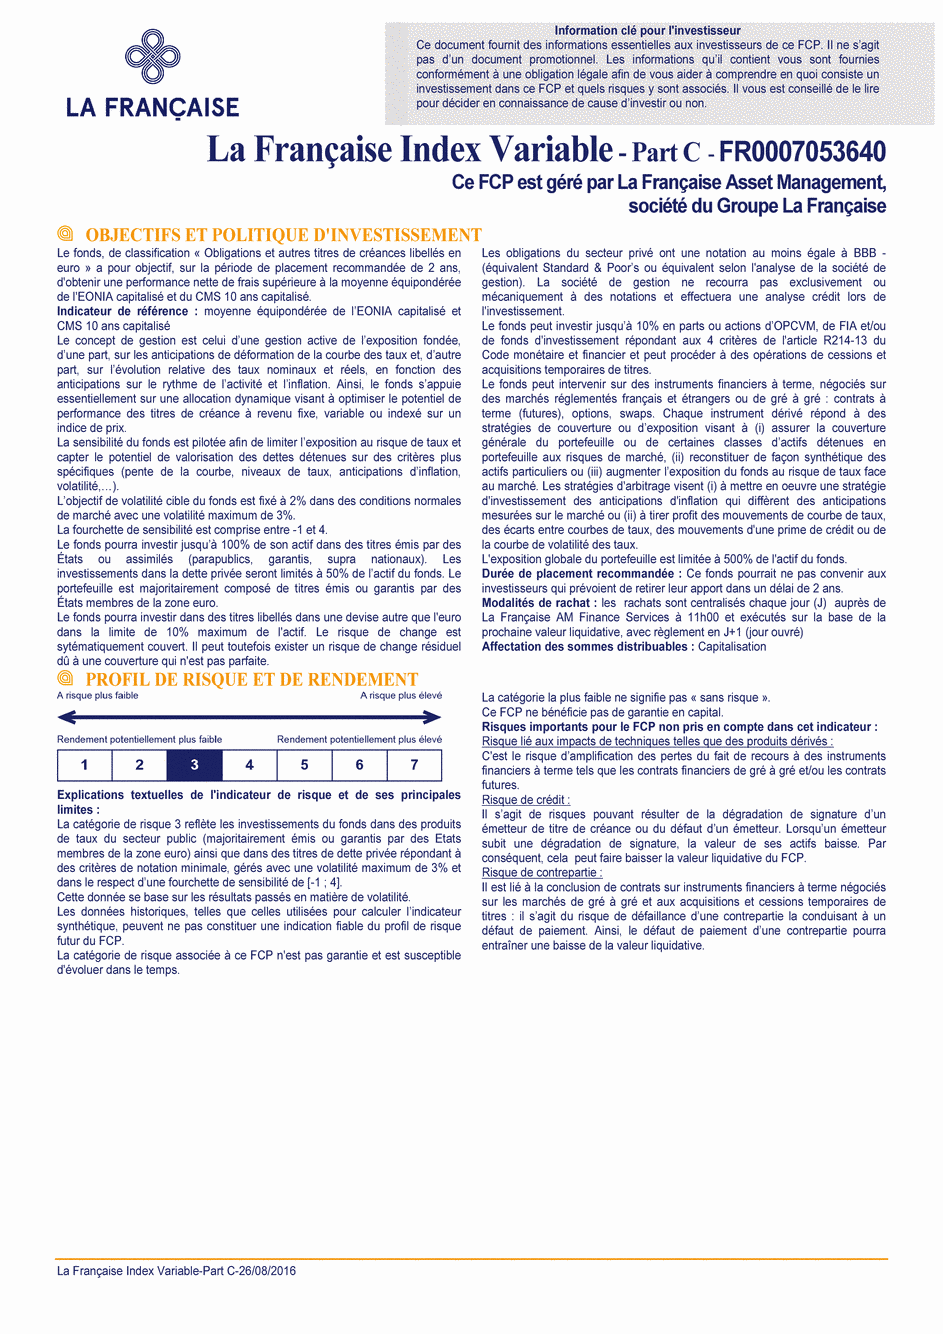 DICI La Française Moderate Multibonds - Part C - 26/08/2016 - Français